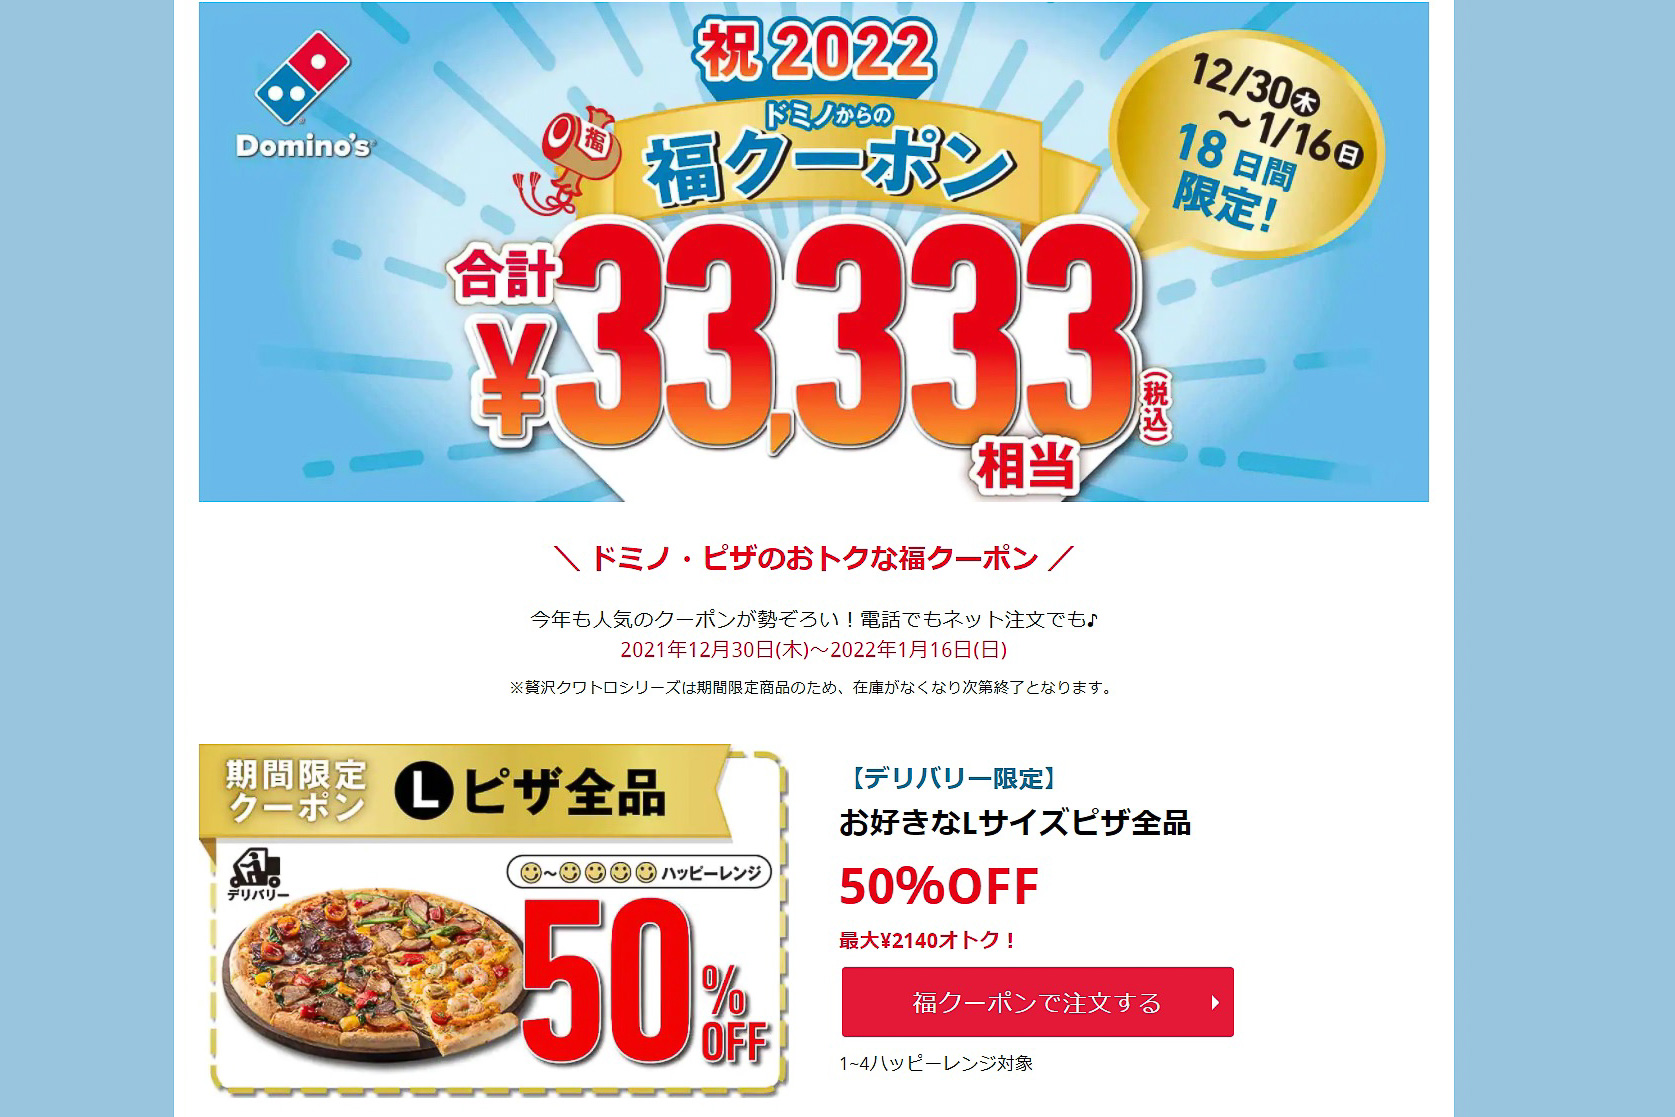 ドミノ・ ピザアカデミークーポン2枚セット - キッズ・ファミリー